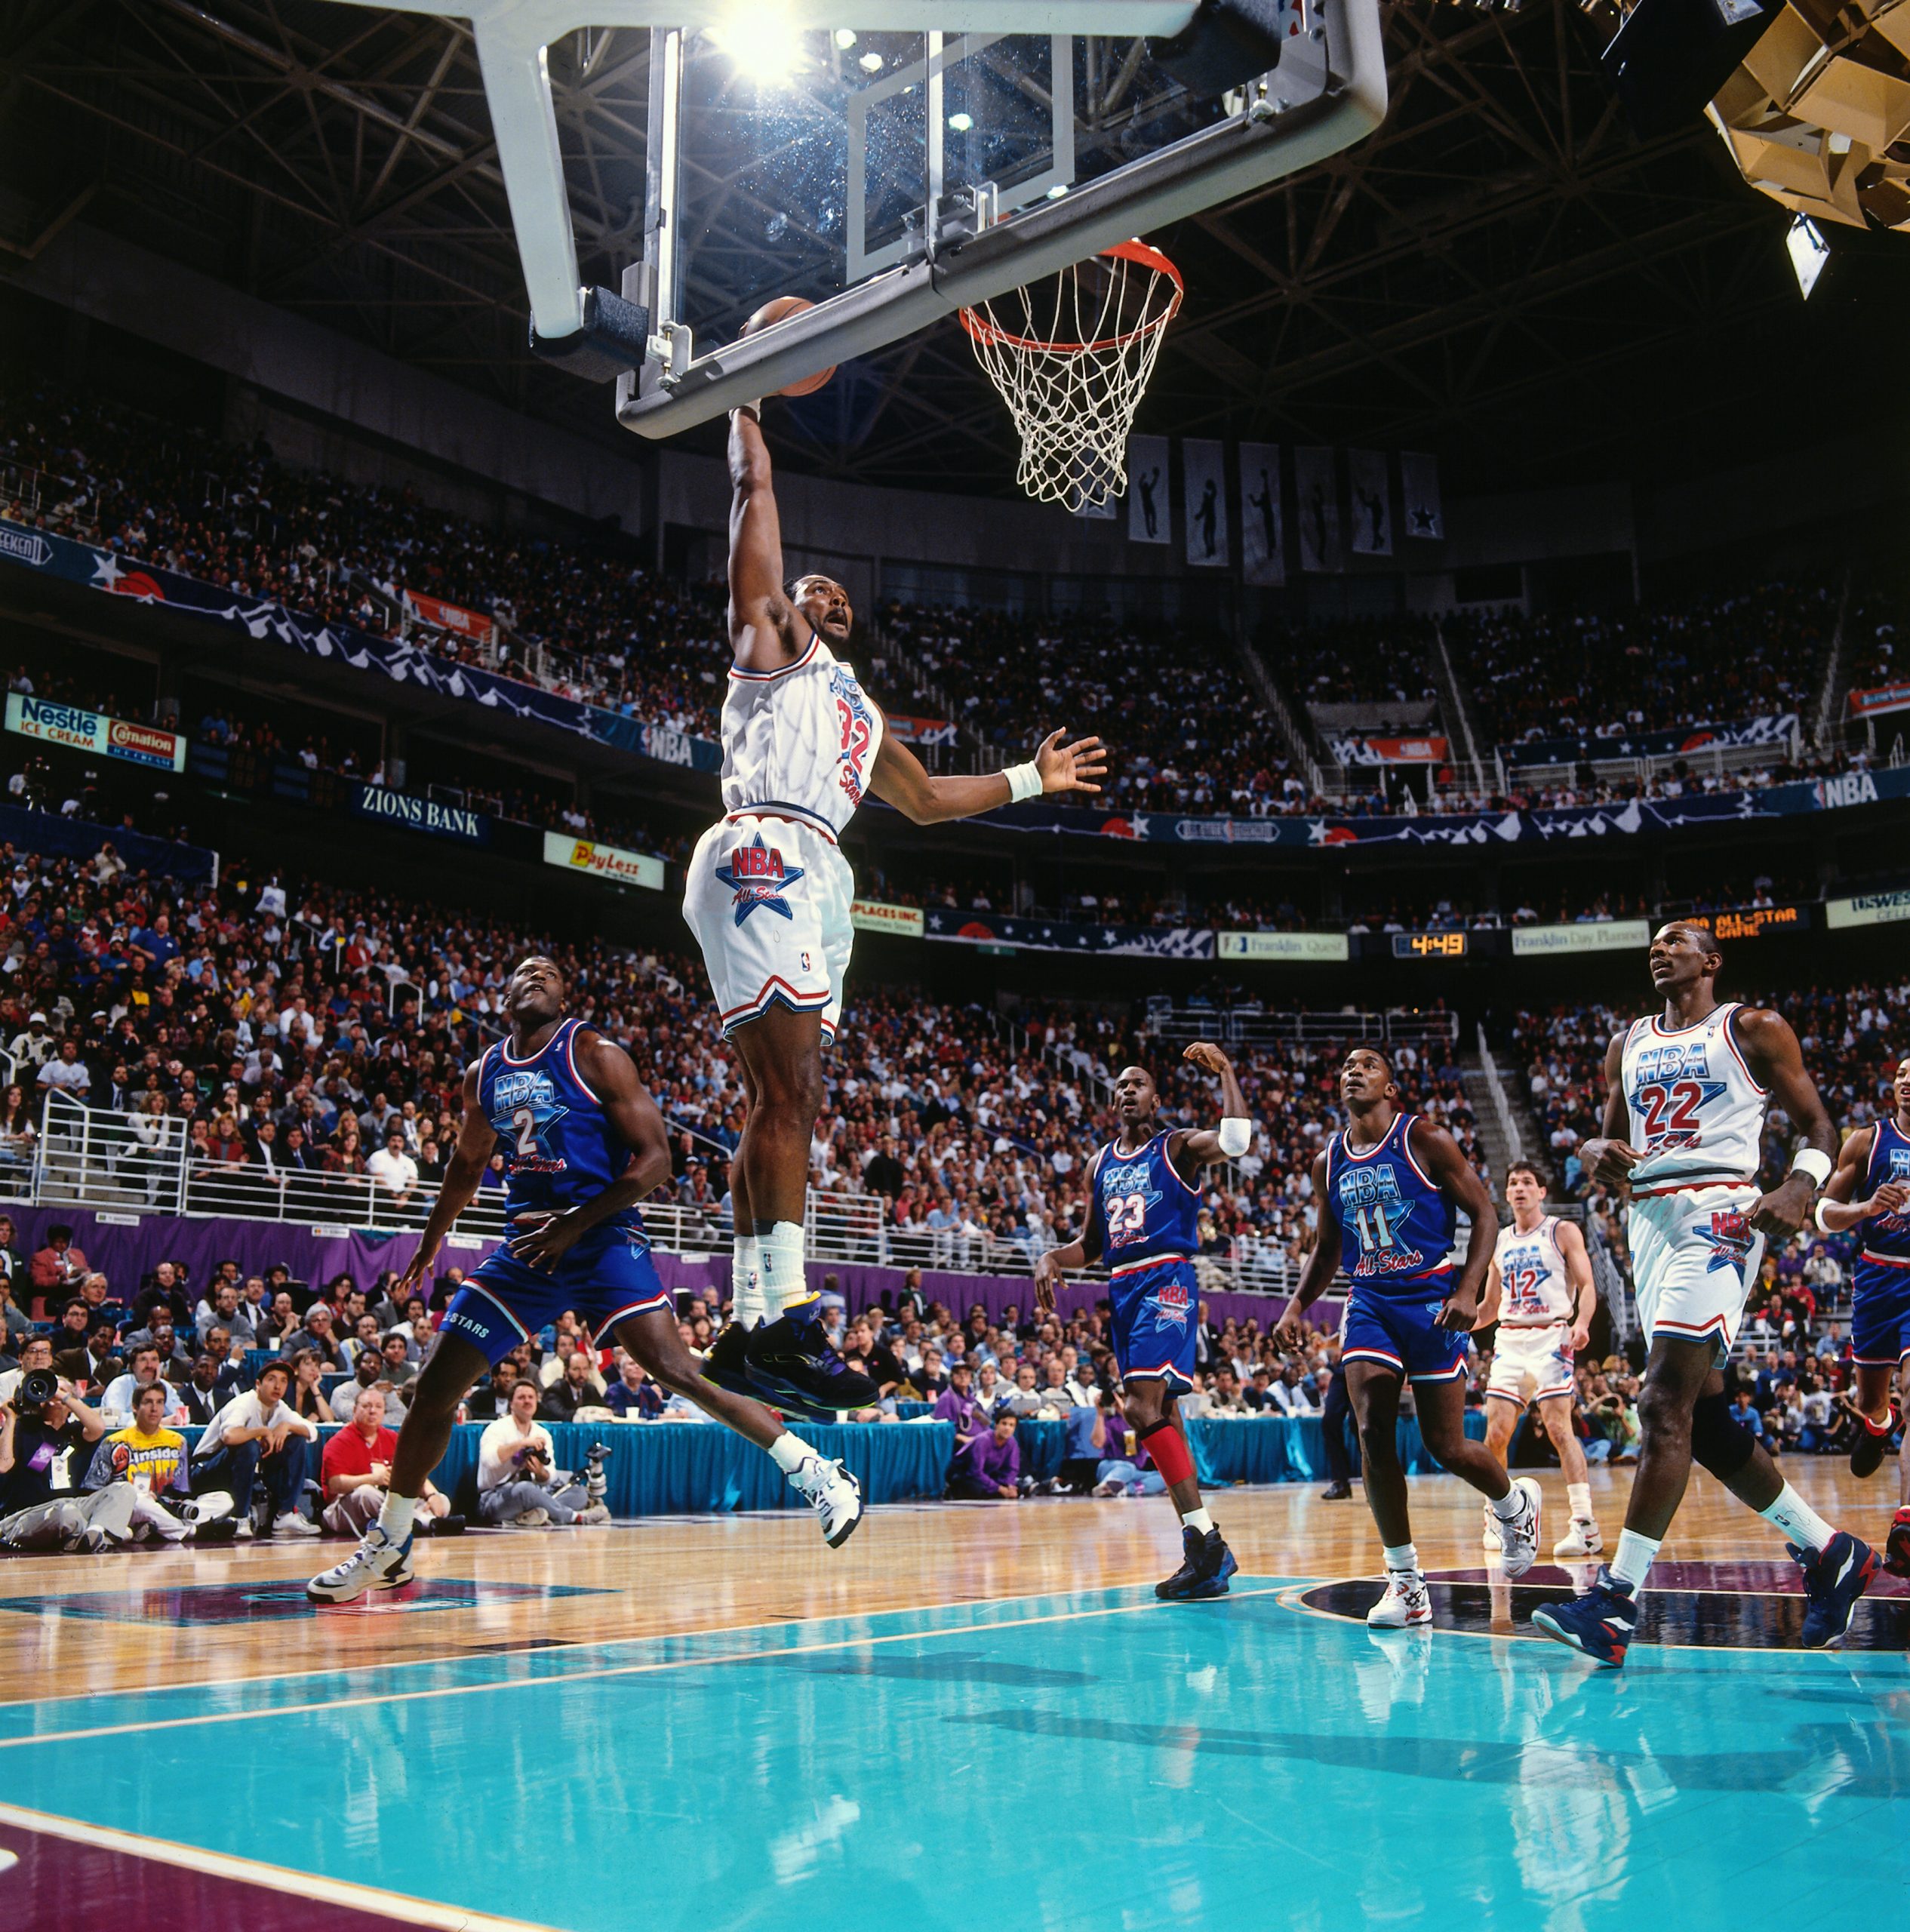 1993 All-Star Game put Salt Lake City, Utah Jazz squarely on NBA